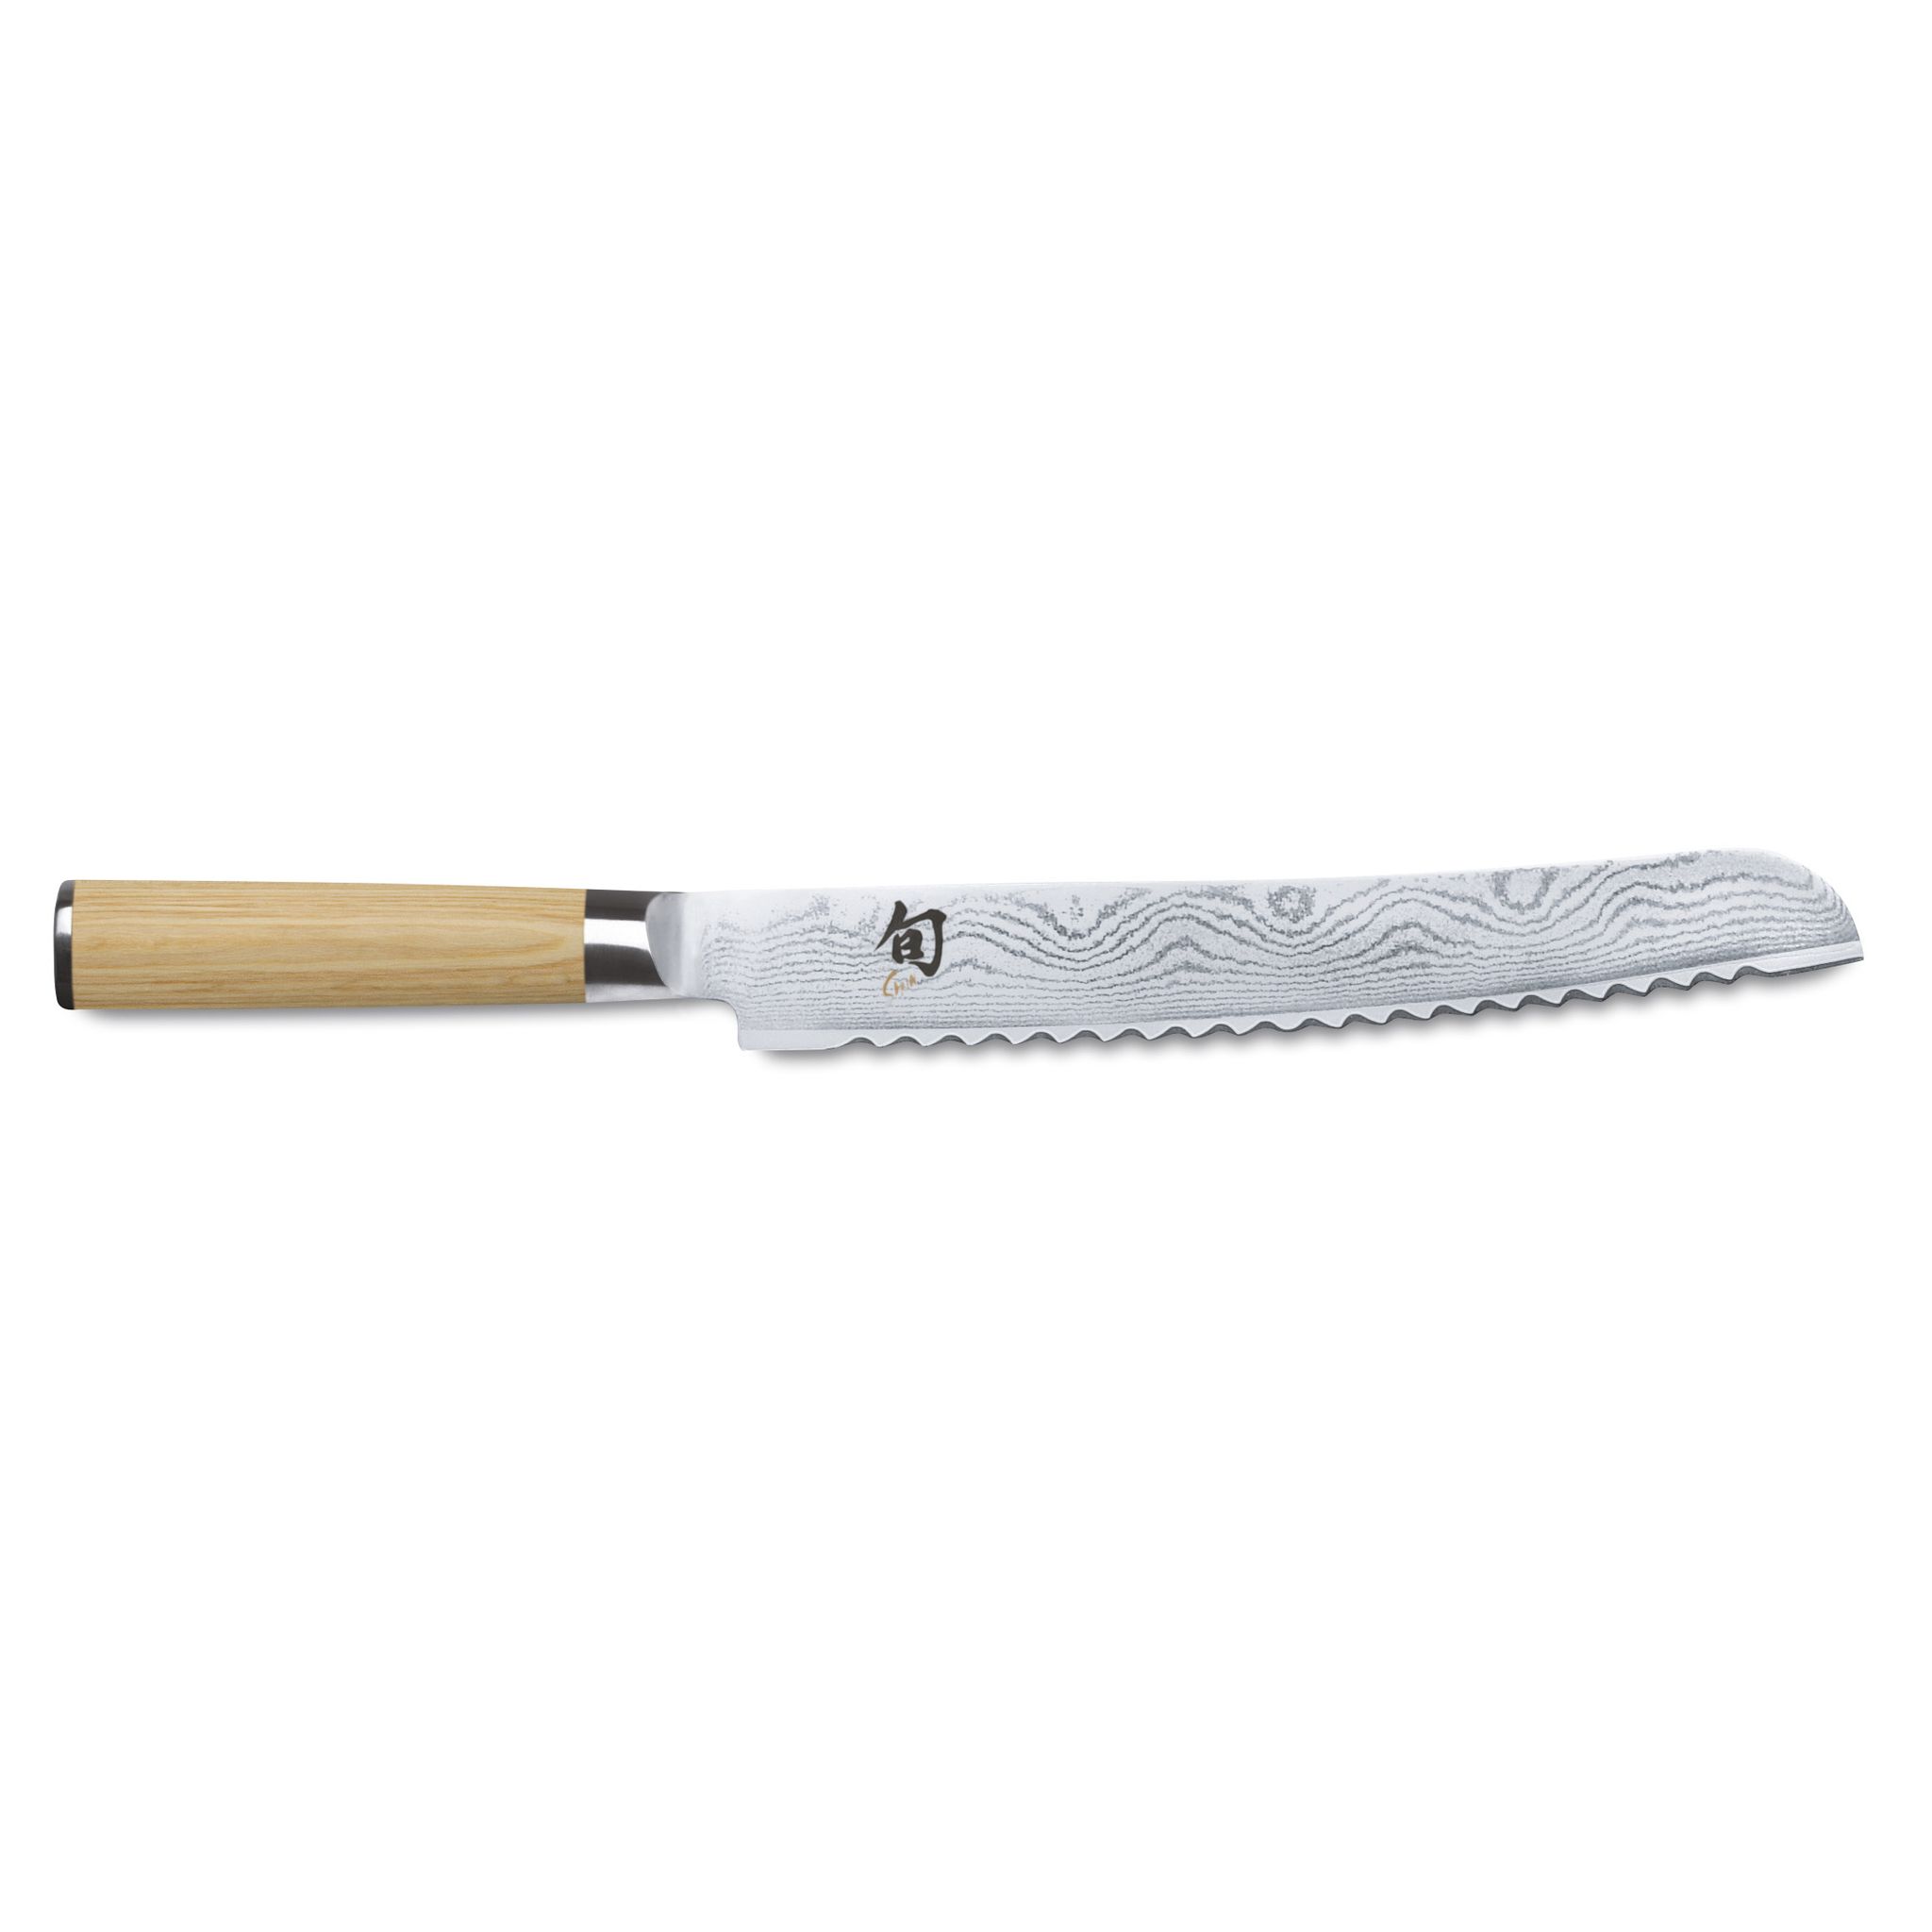 KAI Shun White Brotmesser DM-0705W